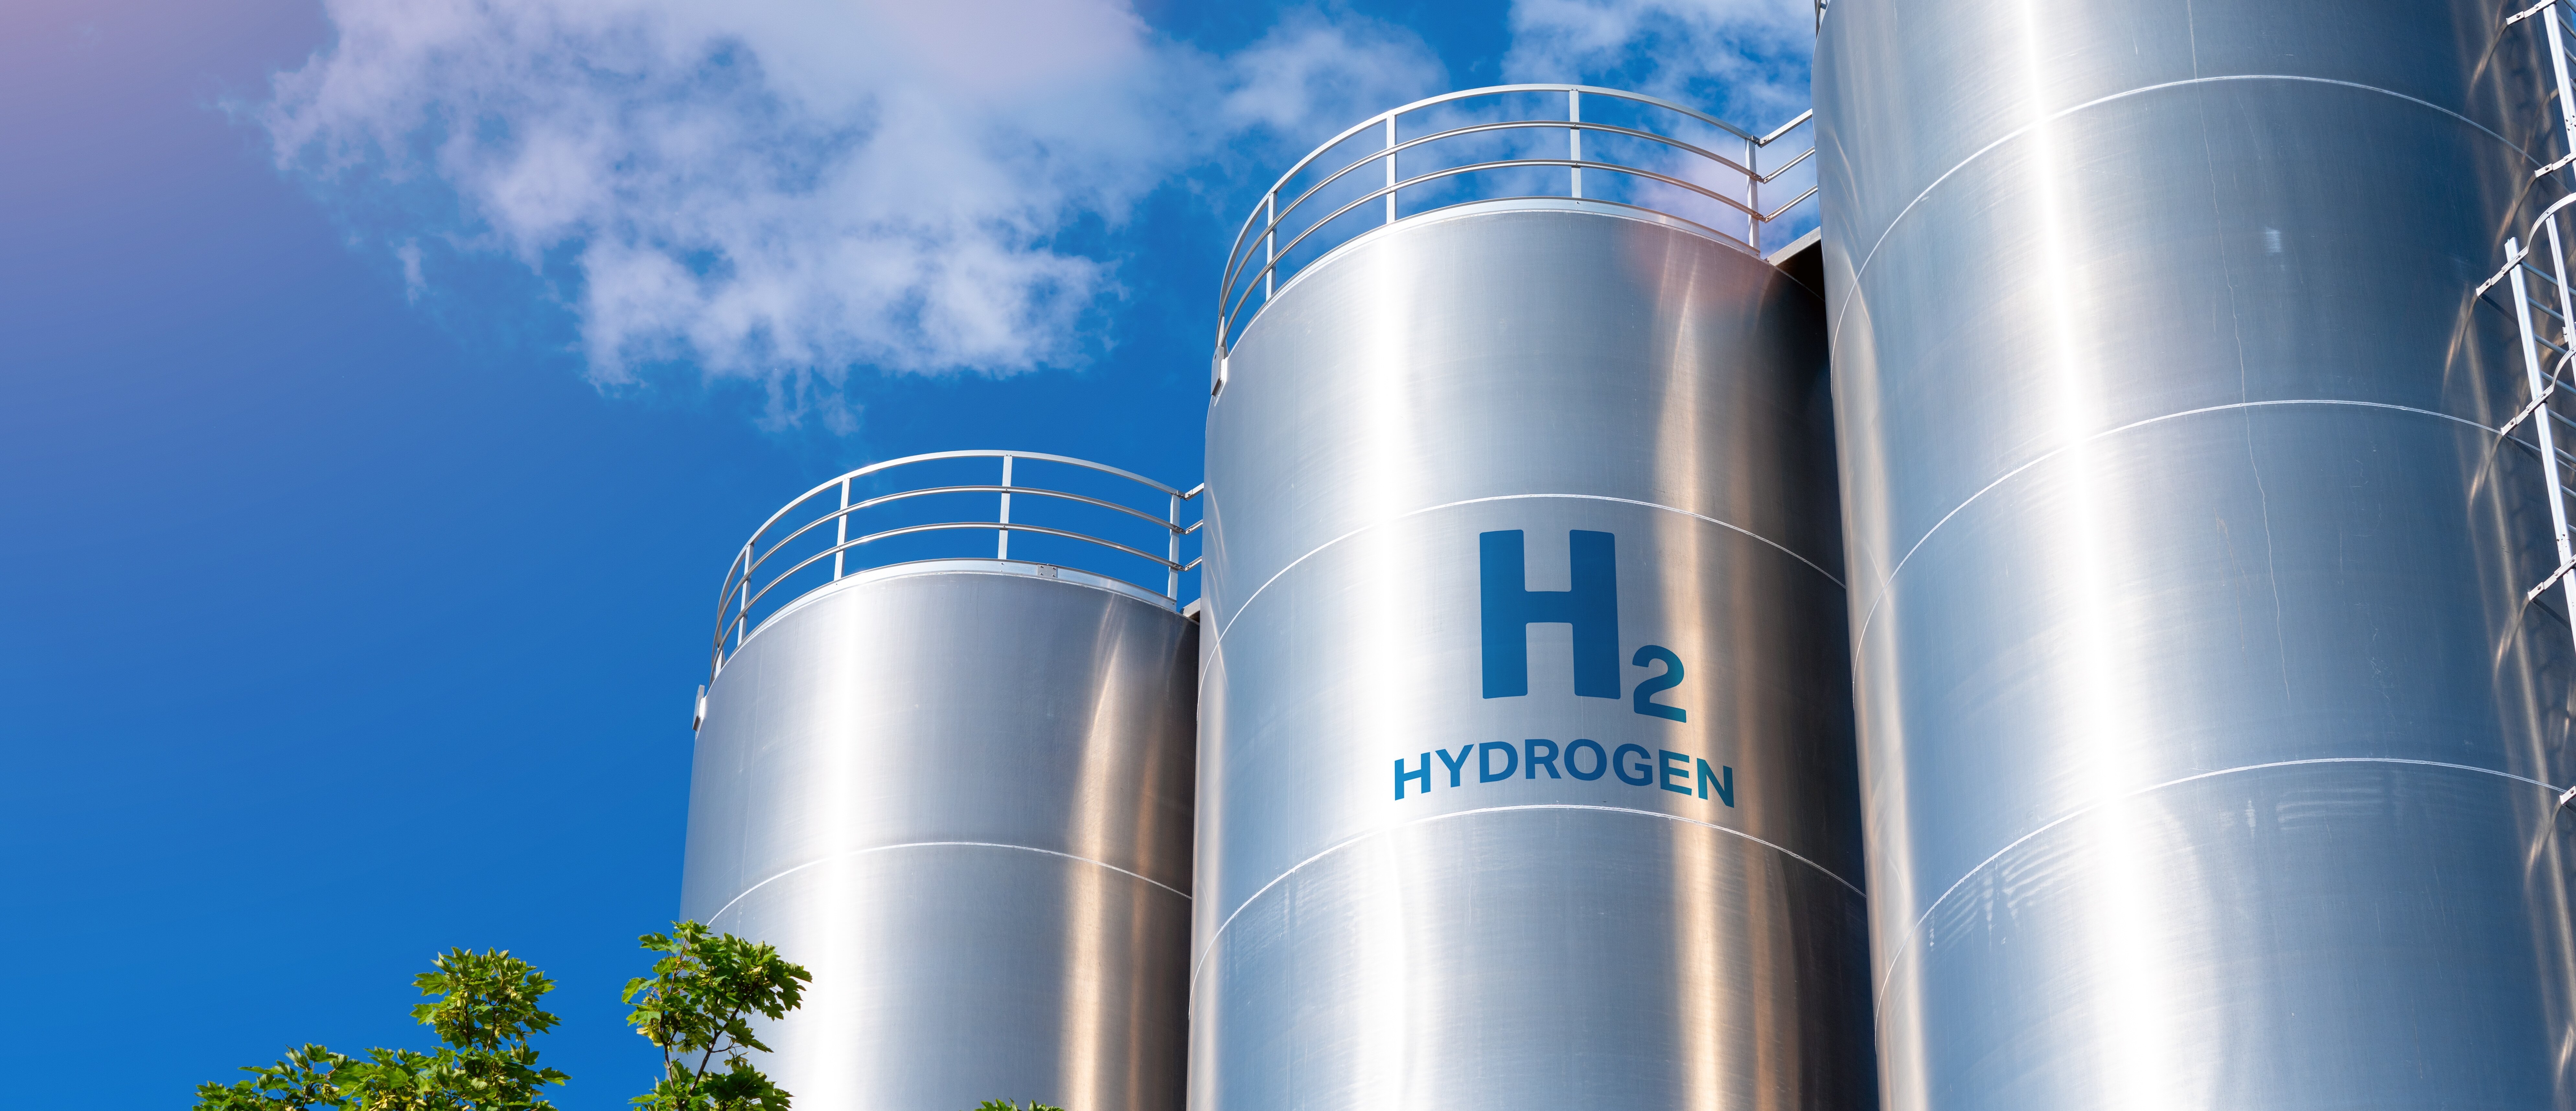 Hydrogène : cette innovation française prometteuse qui pourrait changer la donne